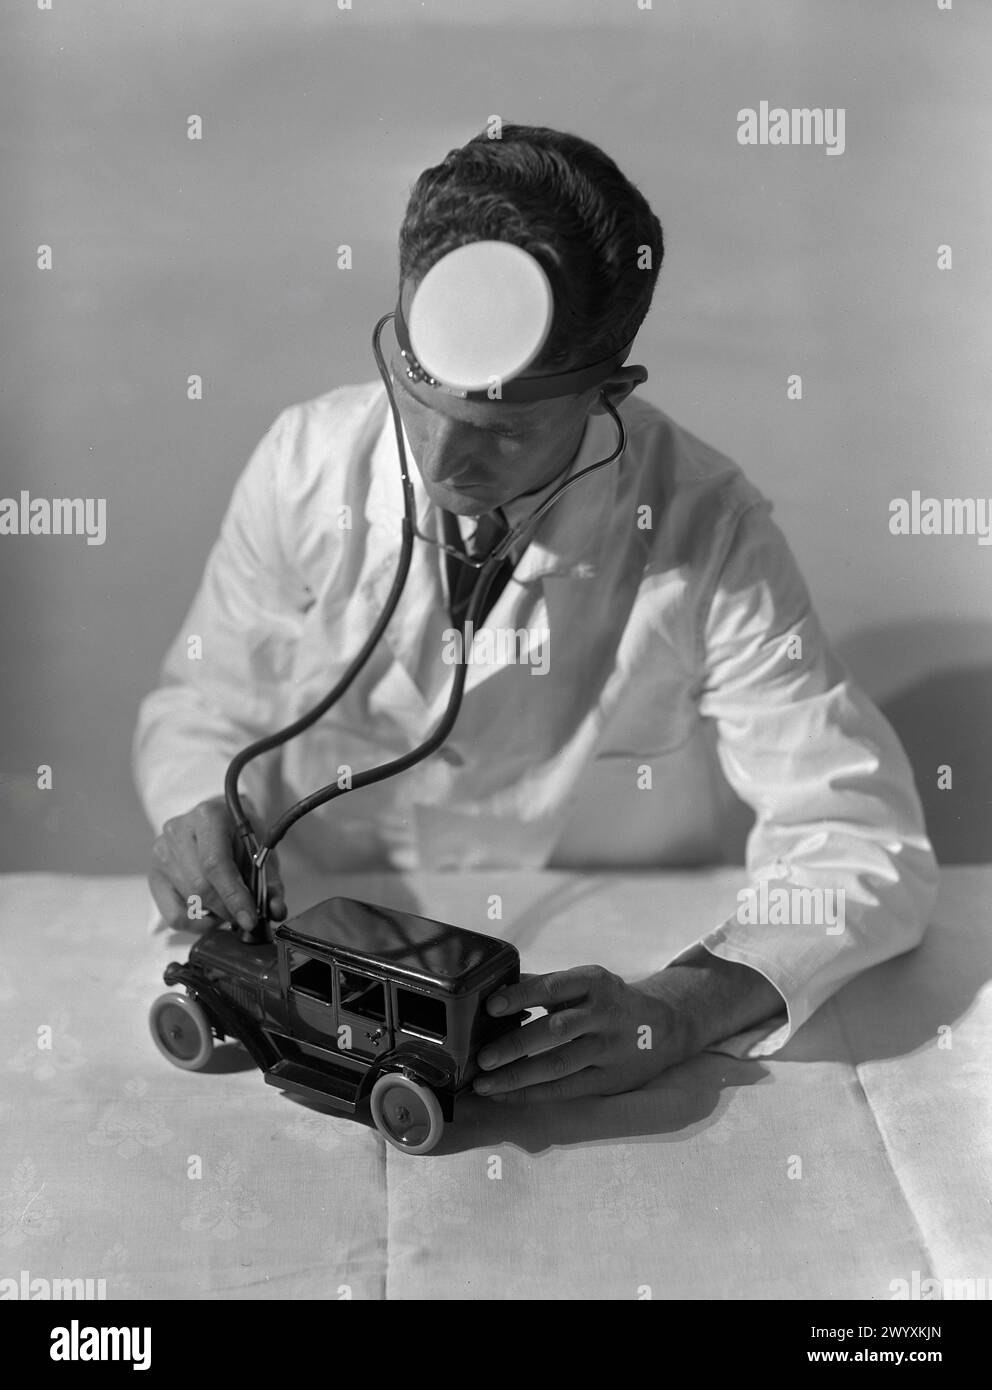 Gordon Burt - Un uomo è umoristicamente raffigurato come uno stetoscopio su una piccola auto giocattolo, indossando uno specchio per la testa comunemente associato ai medici - 1925 Foto Stock